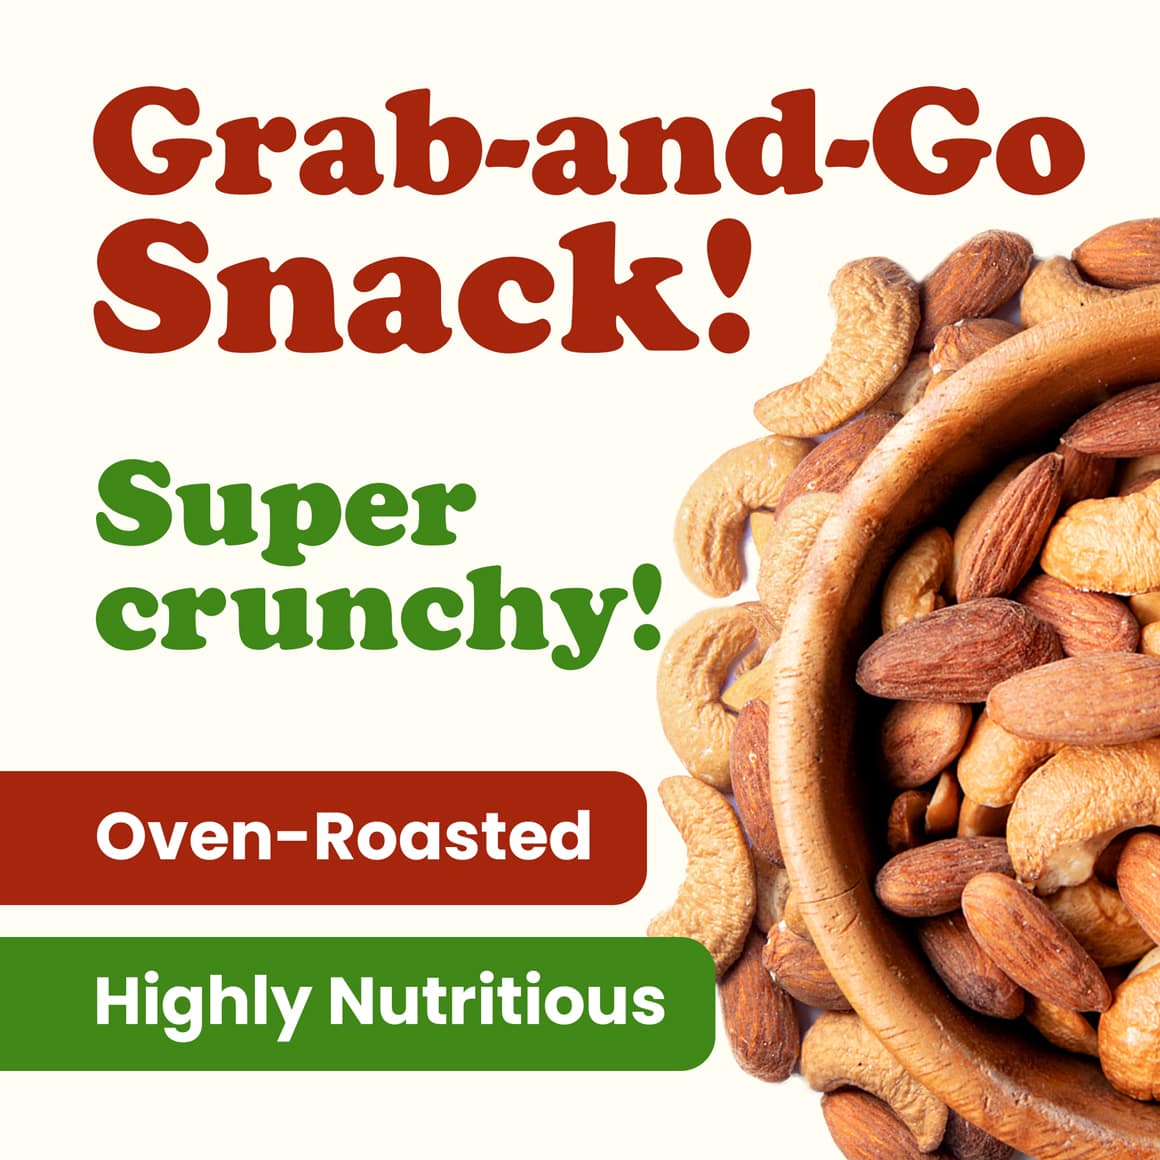 organic-almonds-and-cashews-mix-4-min